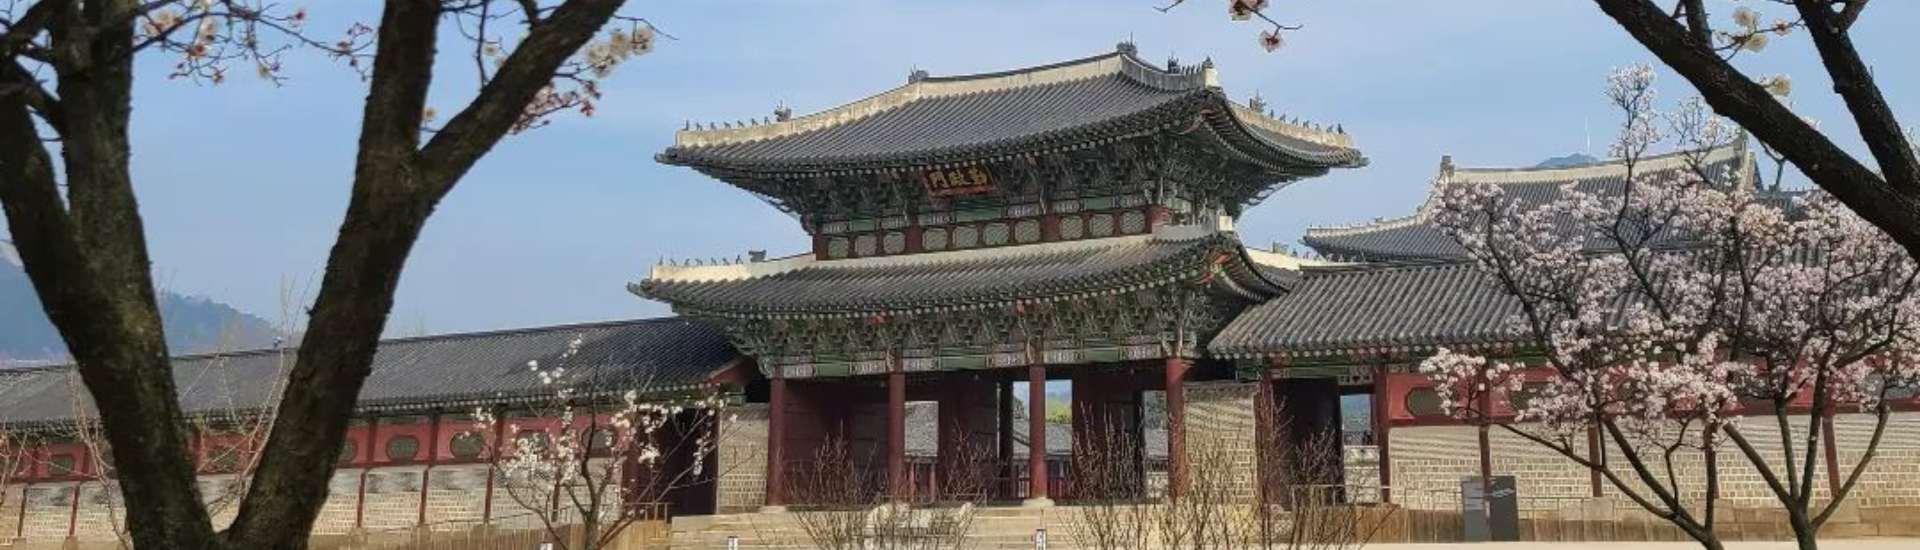 Tour Du Lịch Hàn Quốc Mùa Hoa Anh Đào 5N4Đ: Seoul - Yeouido - Everland - Nami